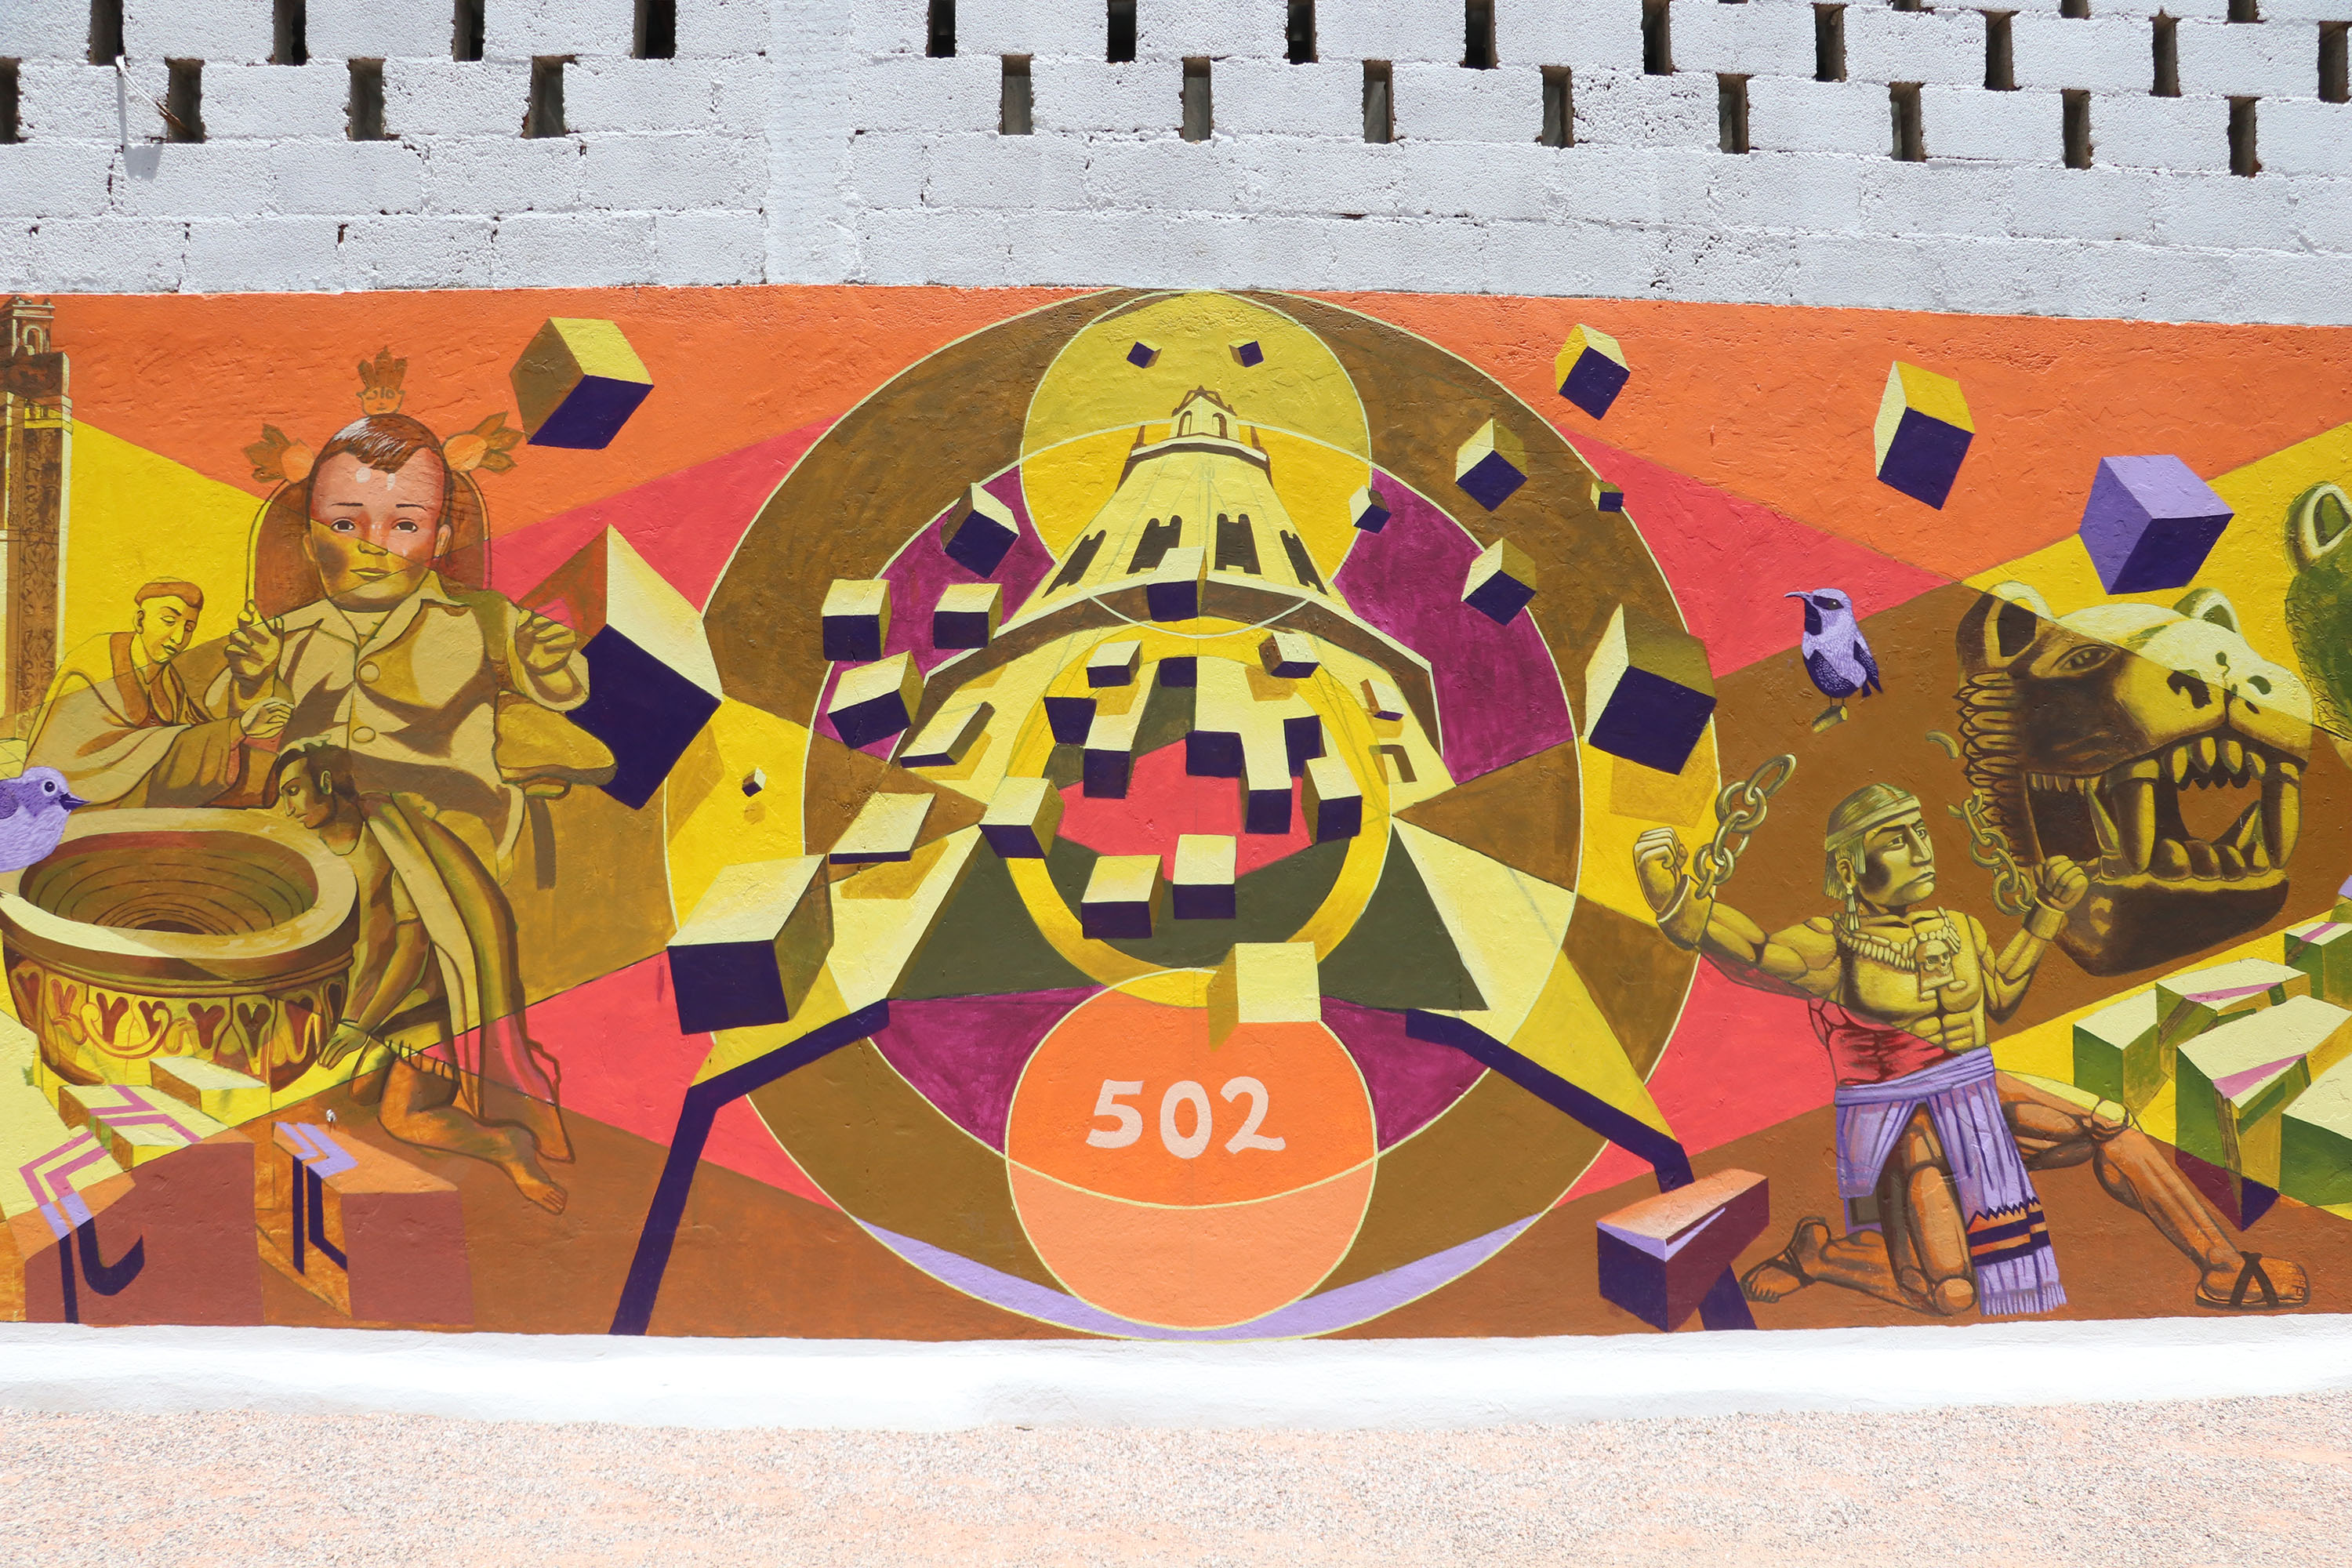 Impulsa Cultura talento de jóvenes poblanos con inauguración de mural en Tepeaca